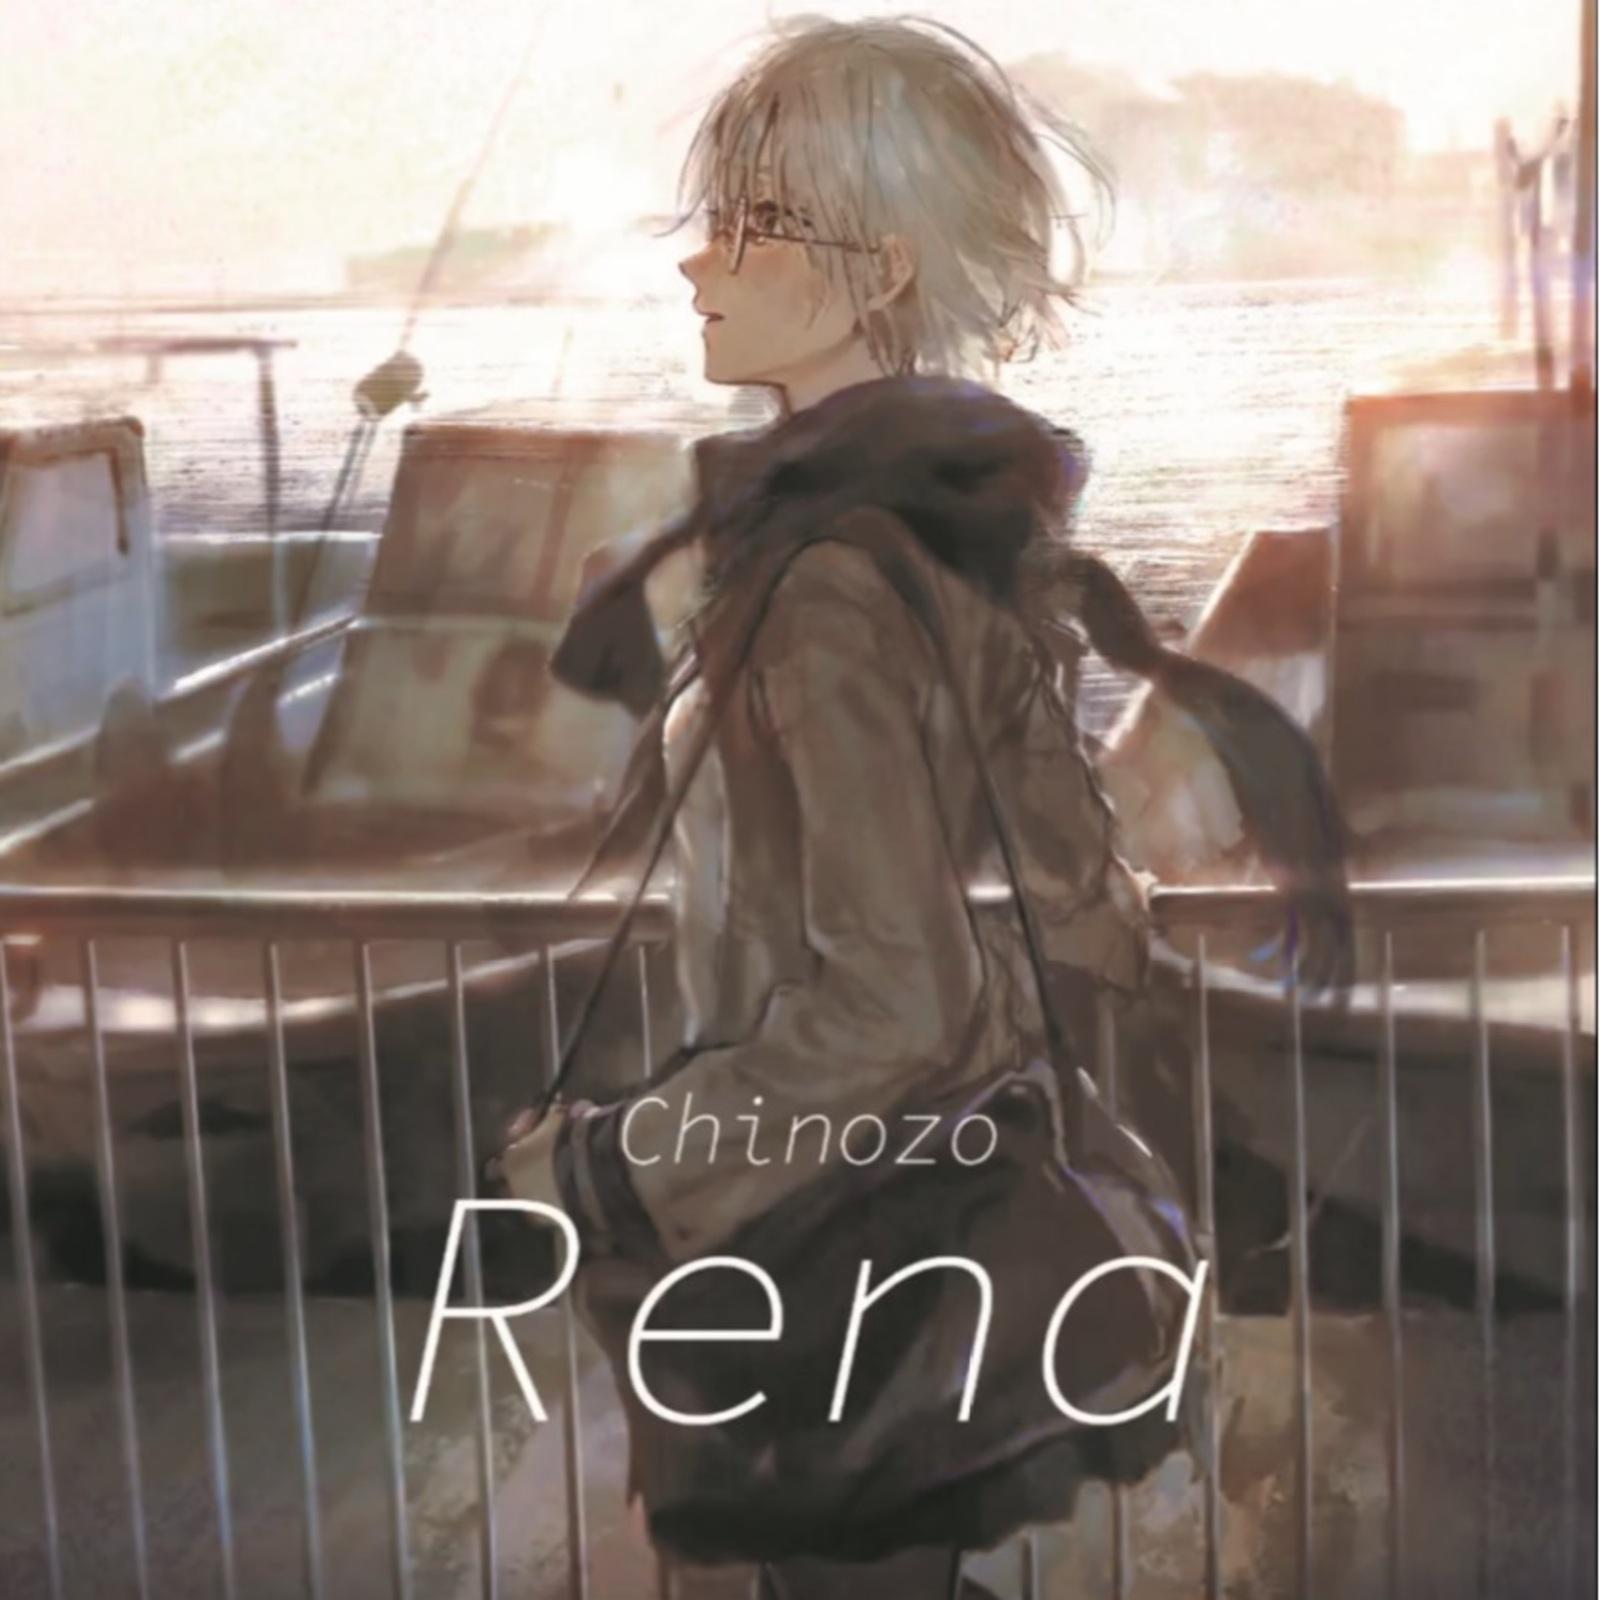 レナ歌词 歌手Chinozo / 初音ミク-专辑Rena-单曲《レナ》LRC歌词下载